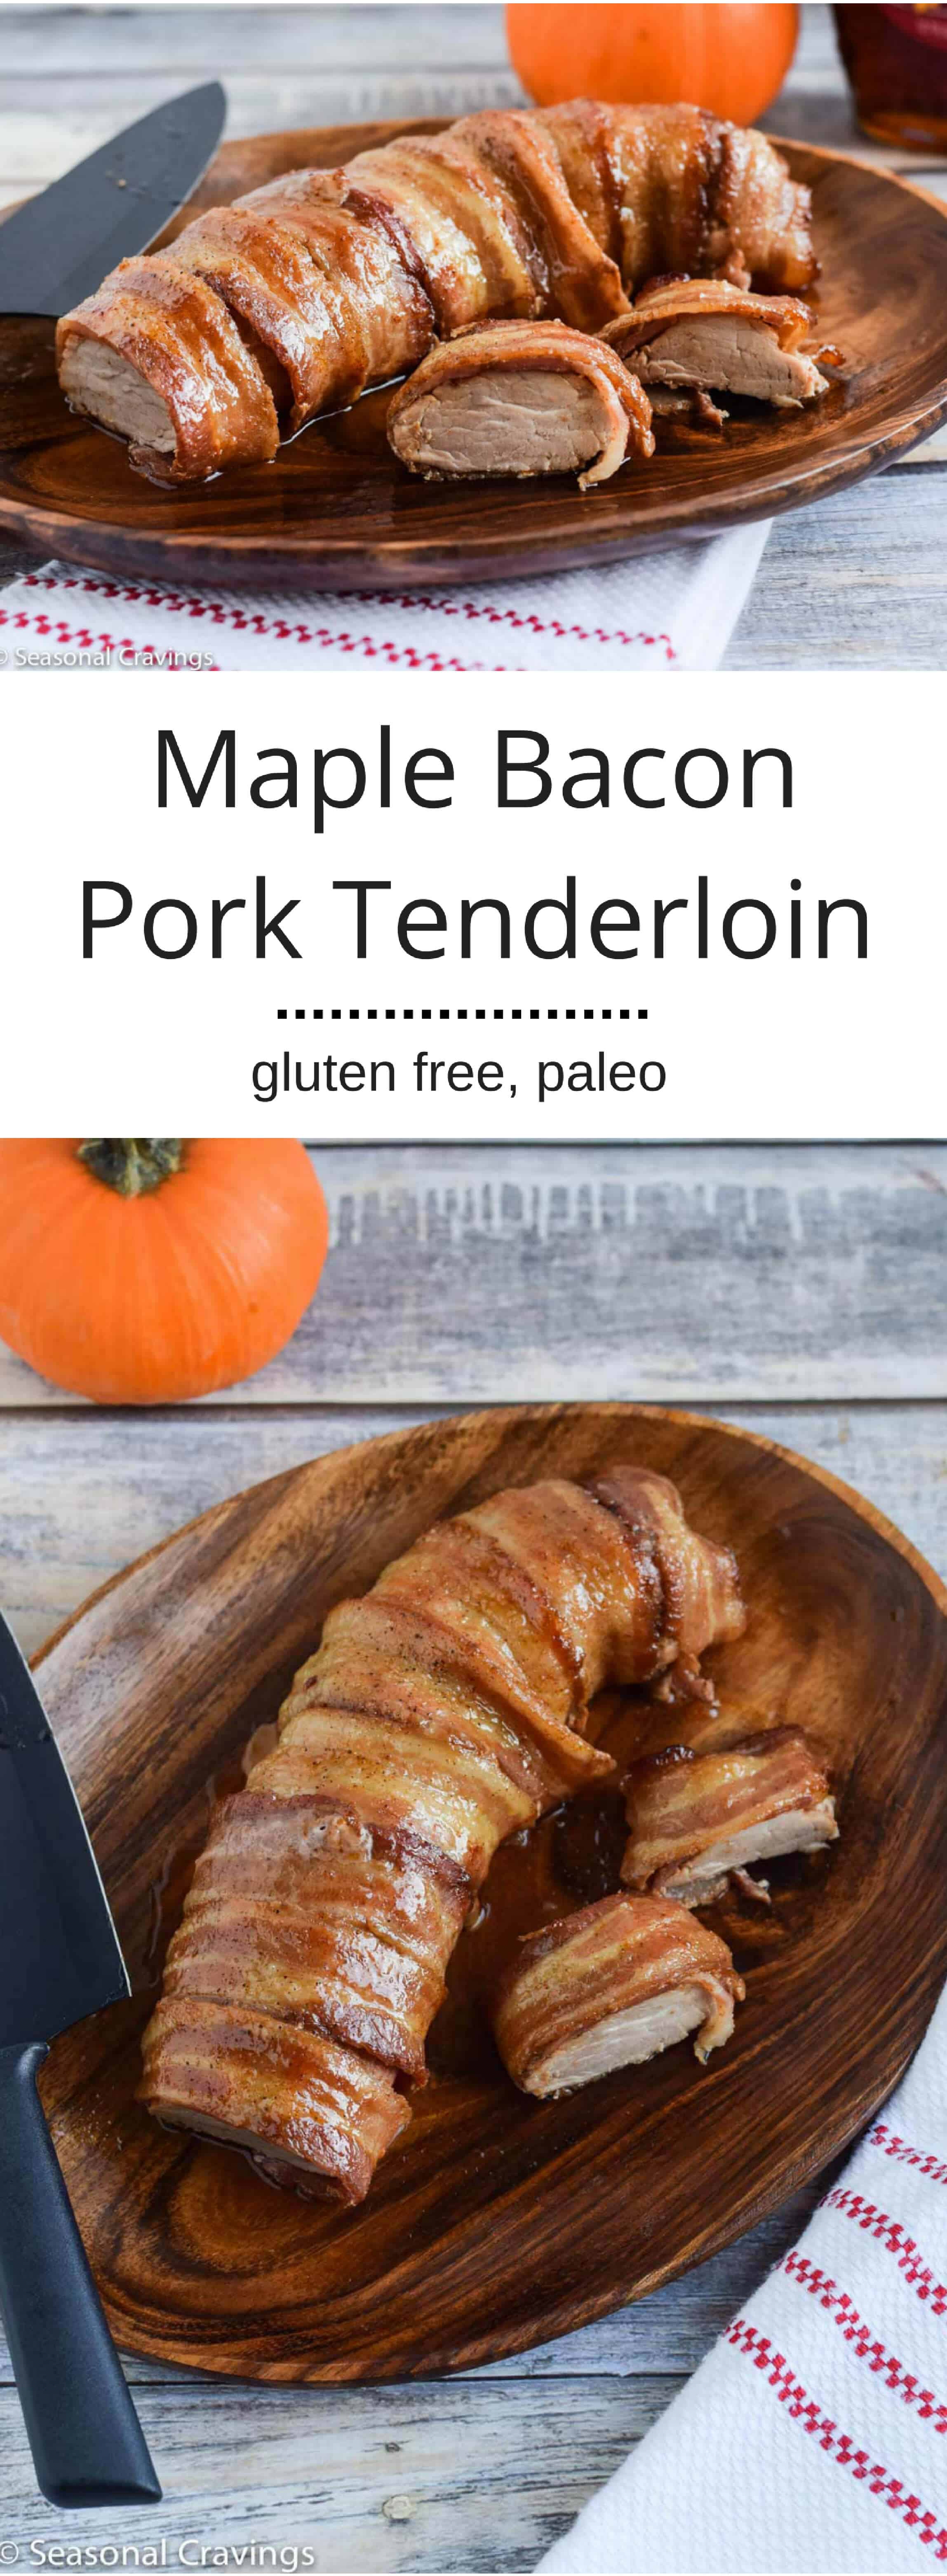 Maple Bacon Pork Tenderloin